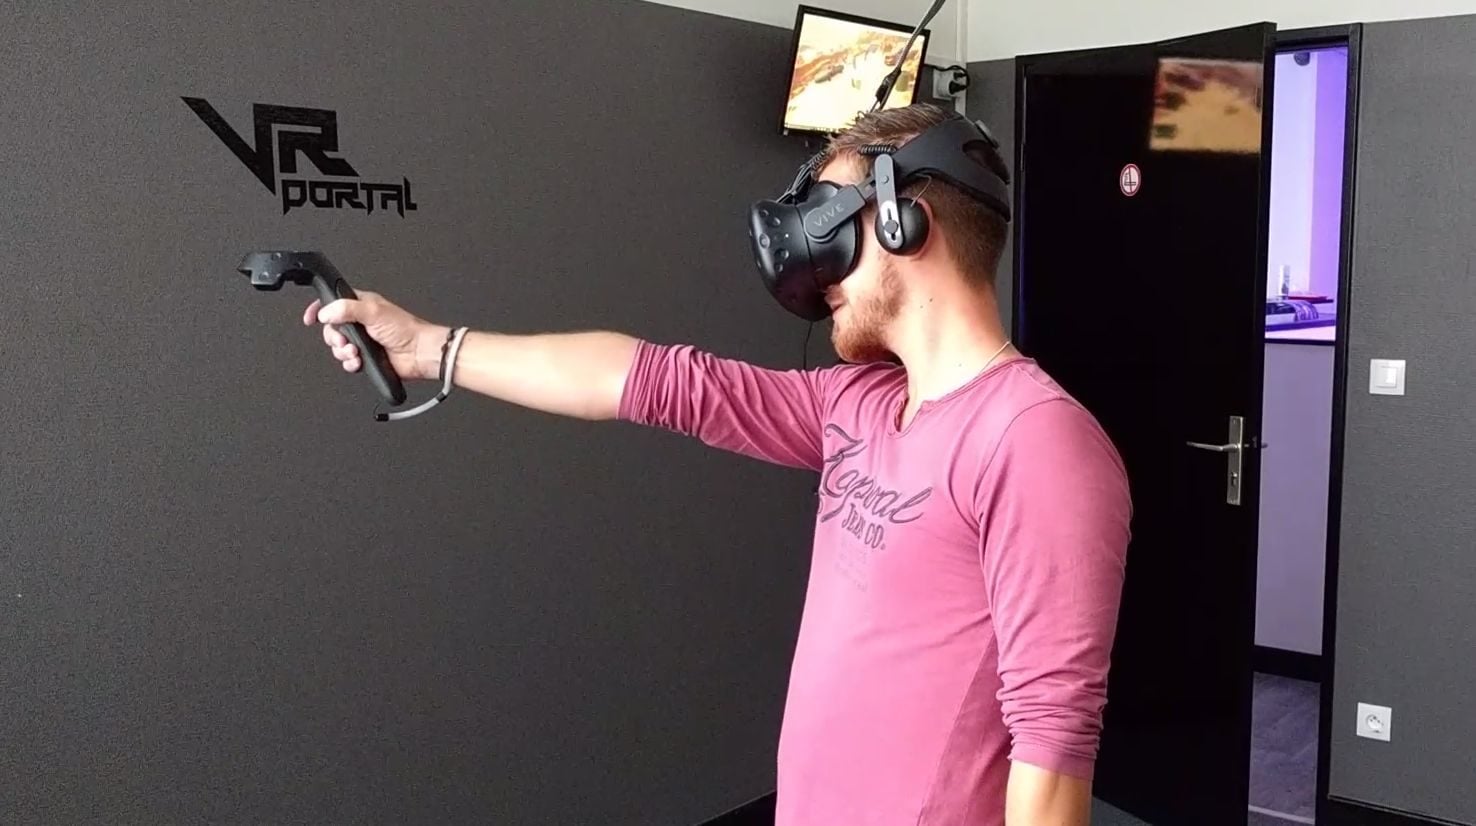 VR Portal, première salle dédiée à la réalité virtuelle, ouvre à Strasbourg